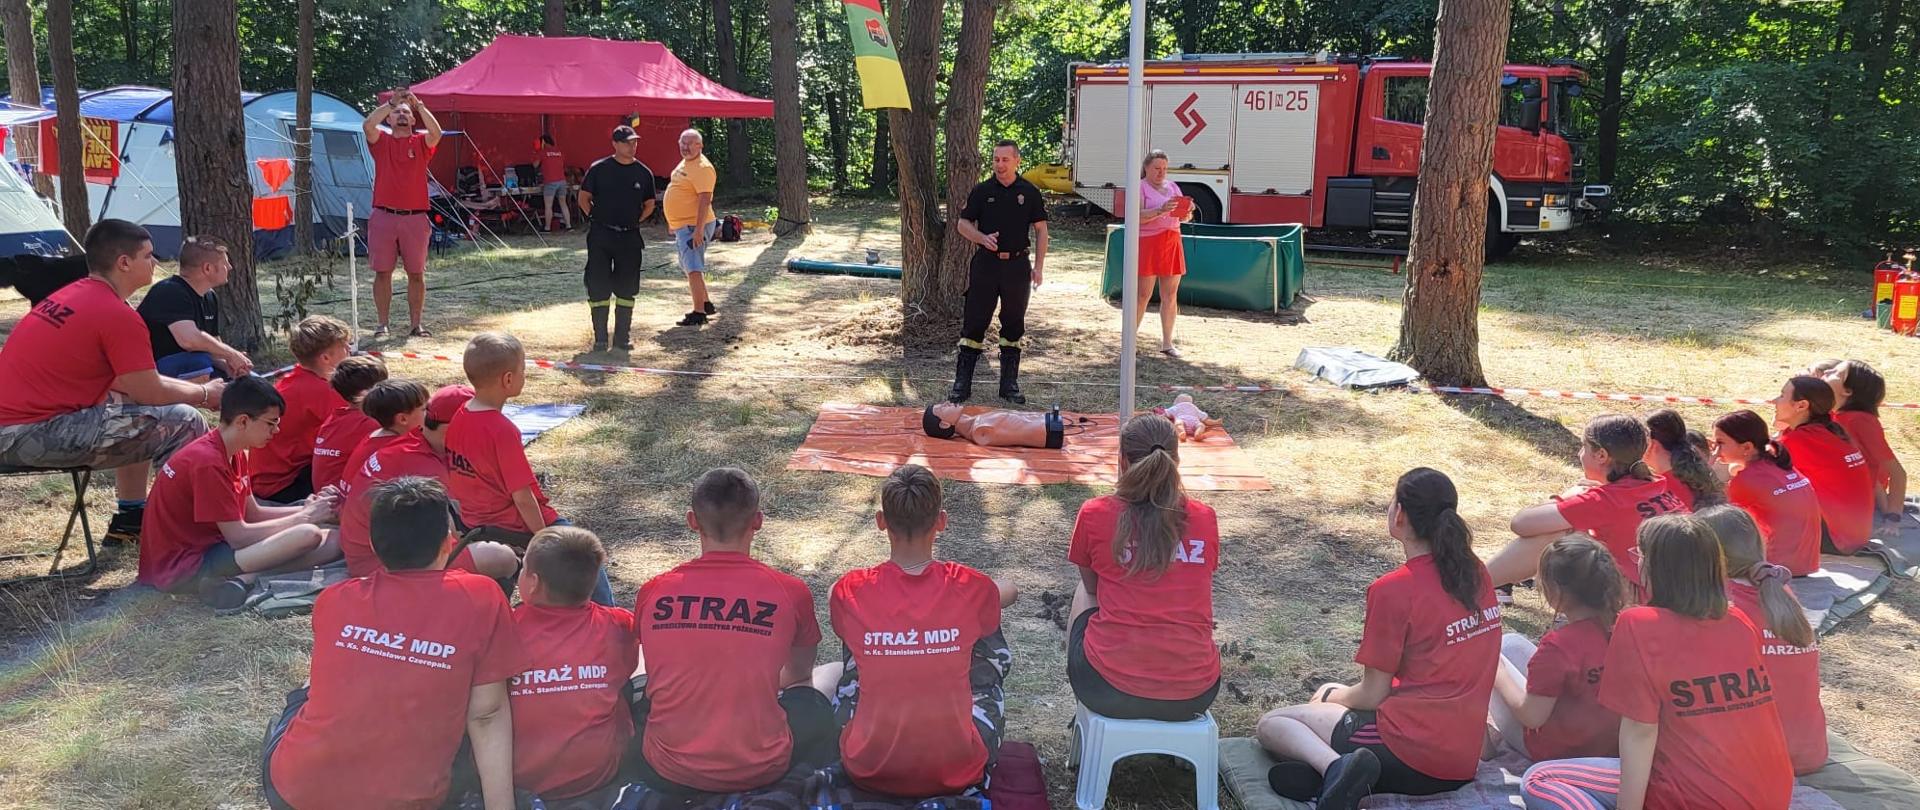 Strażak prowadzi szkolenie dla członków Młodzieżowej Drużyny Pożarniczej